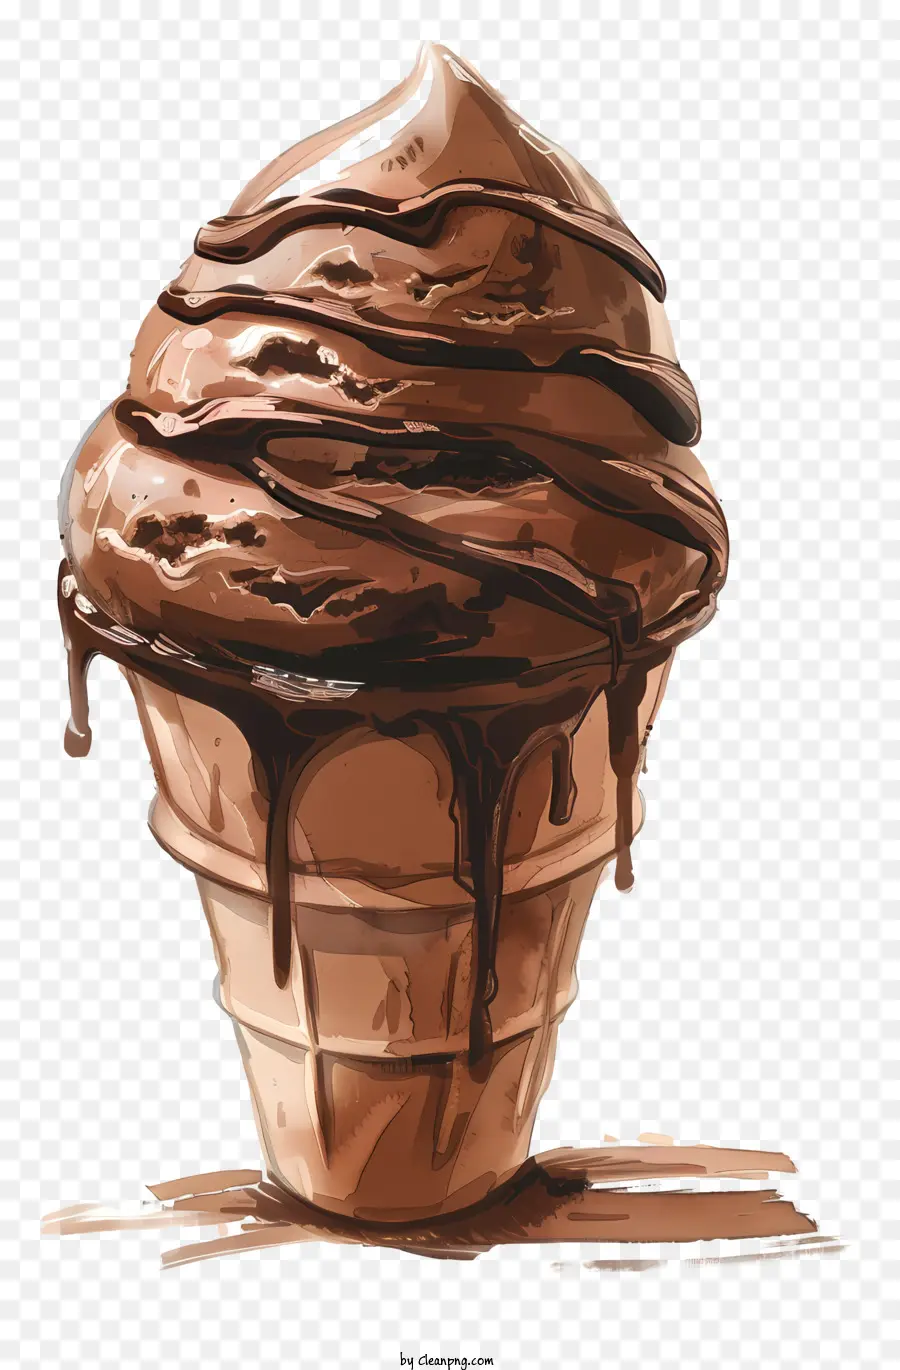 chocolate ice cream chocolate ice cream cone dripping chocolate sauce brown ice cream chocolate cone